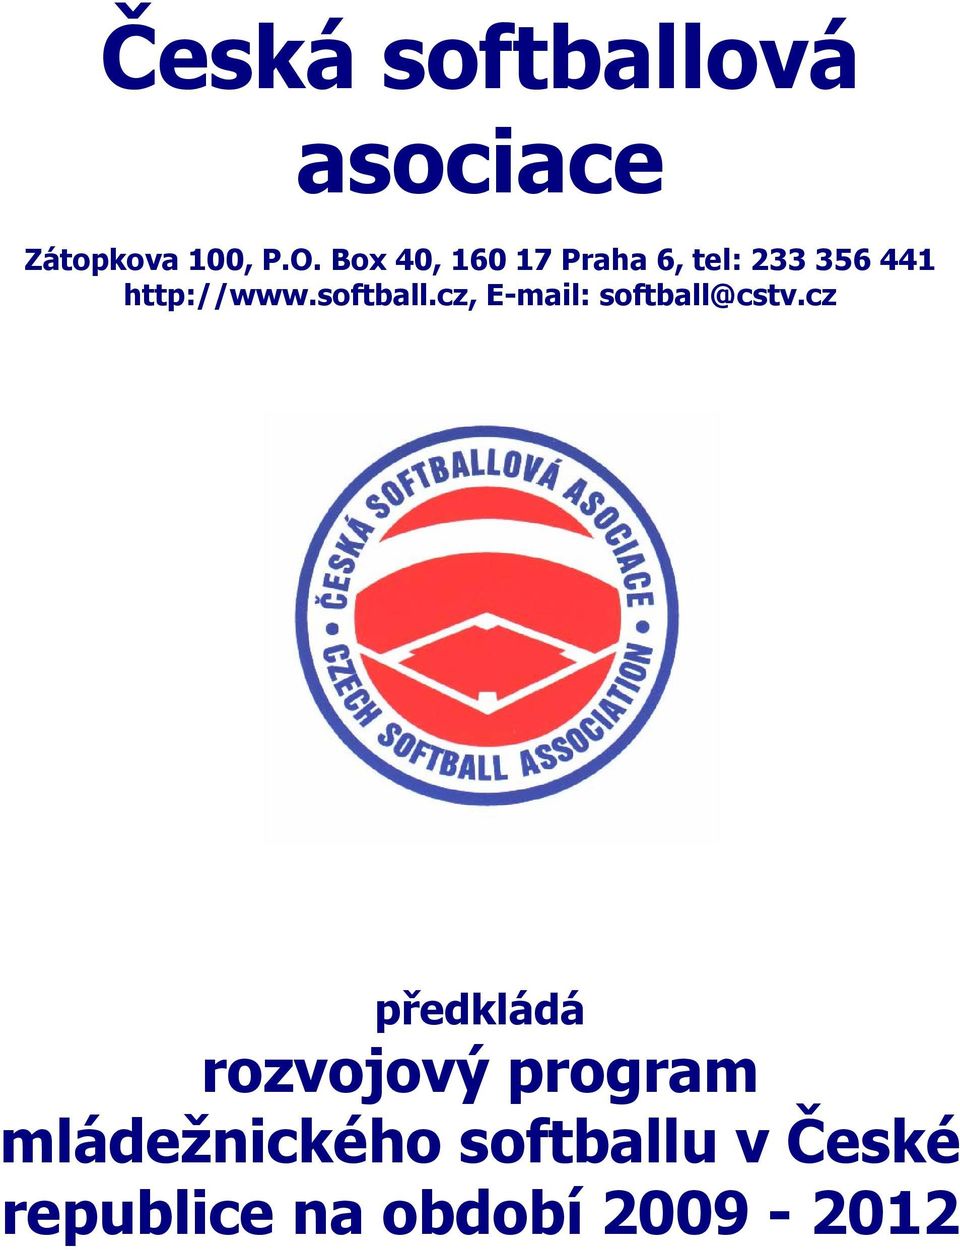 softball.cz, E-mail: softball@cstv.